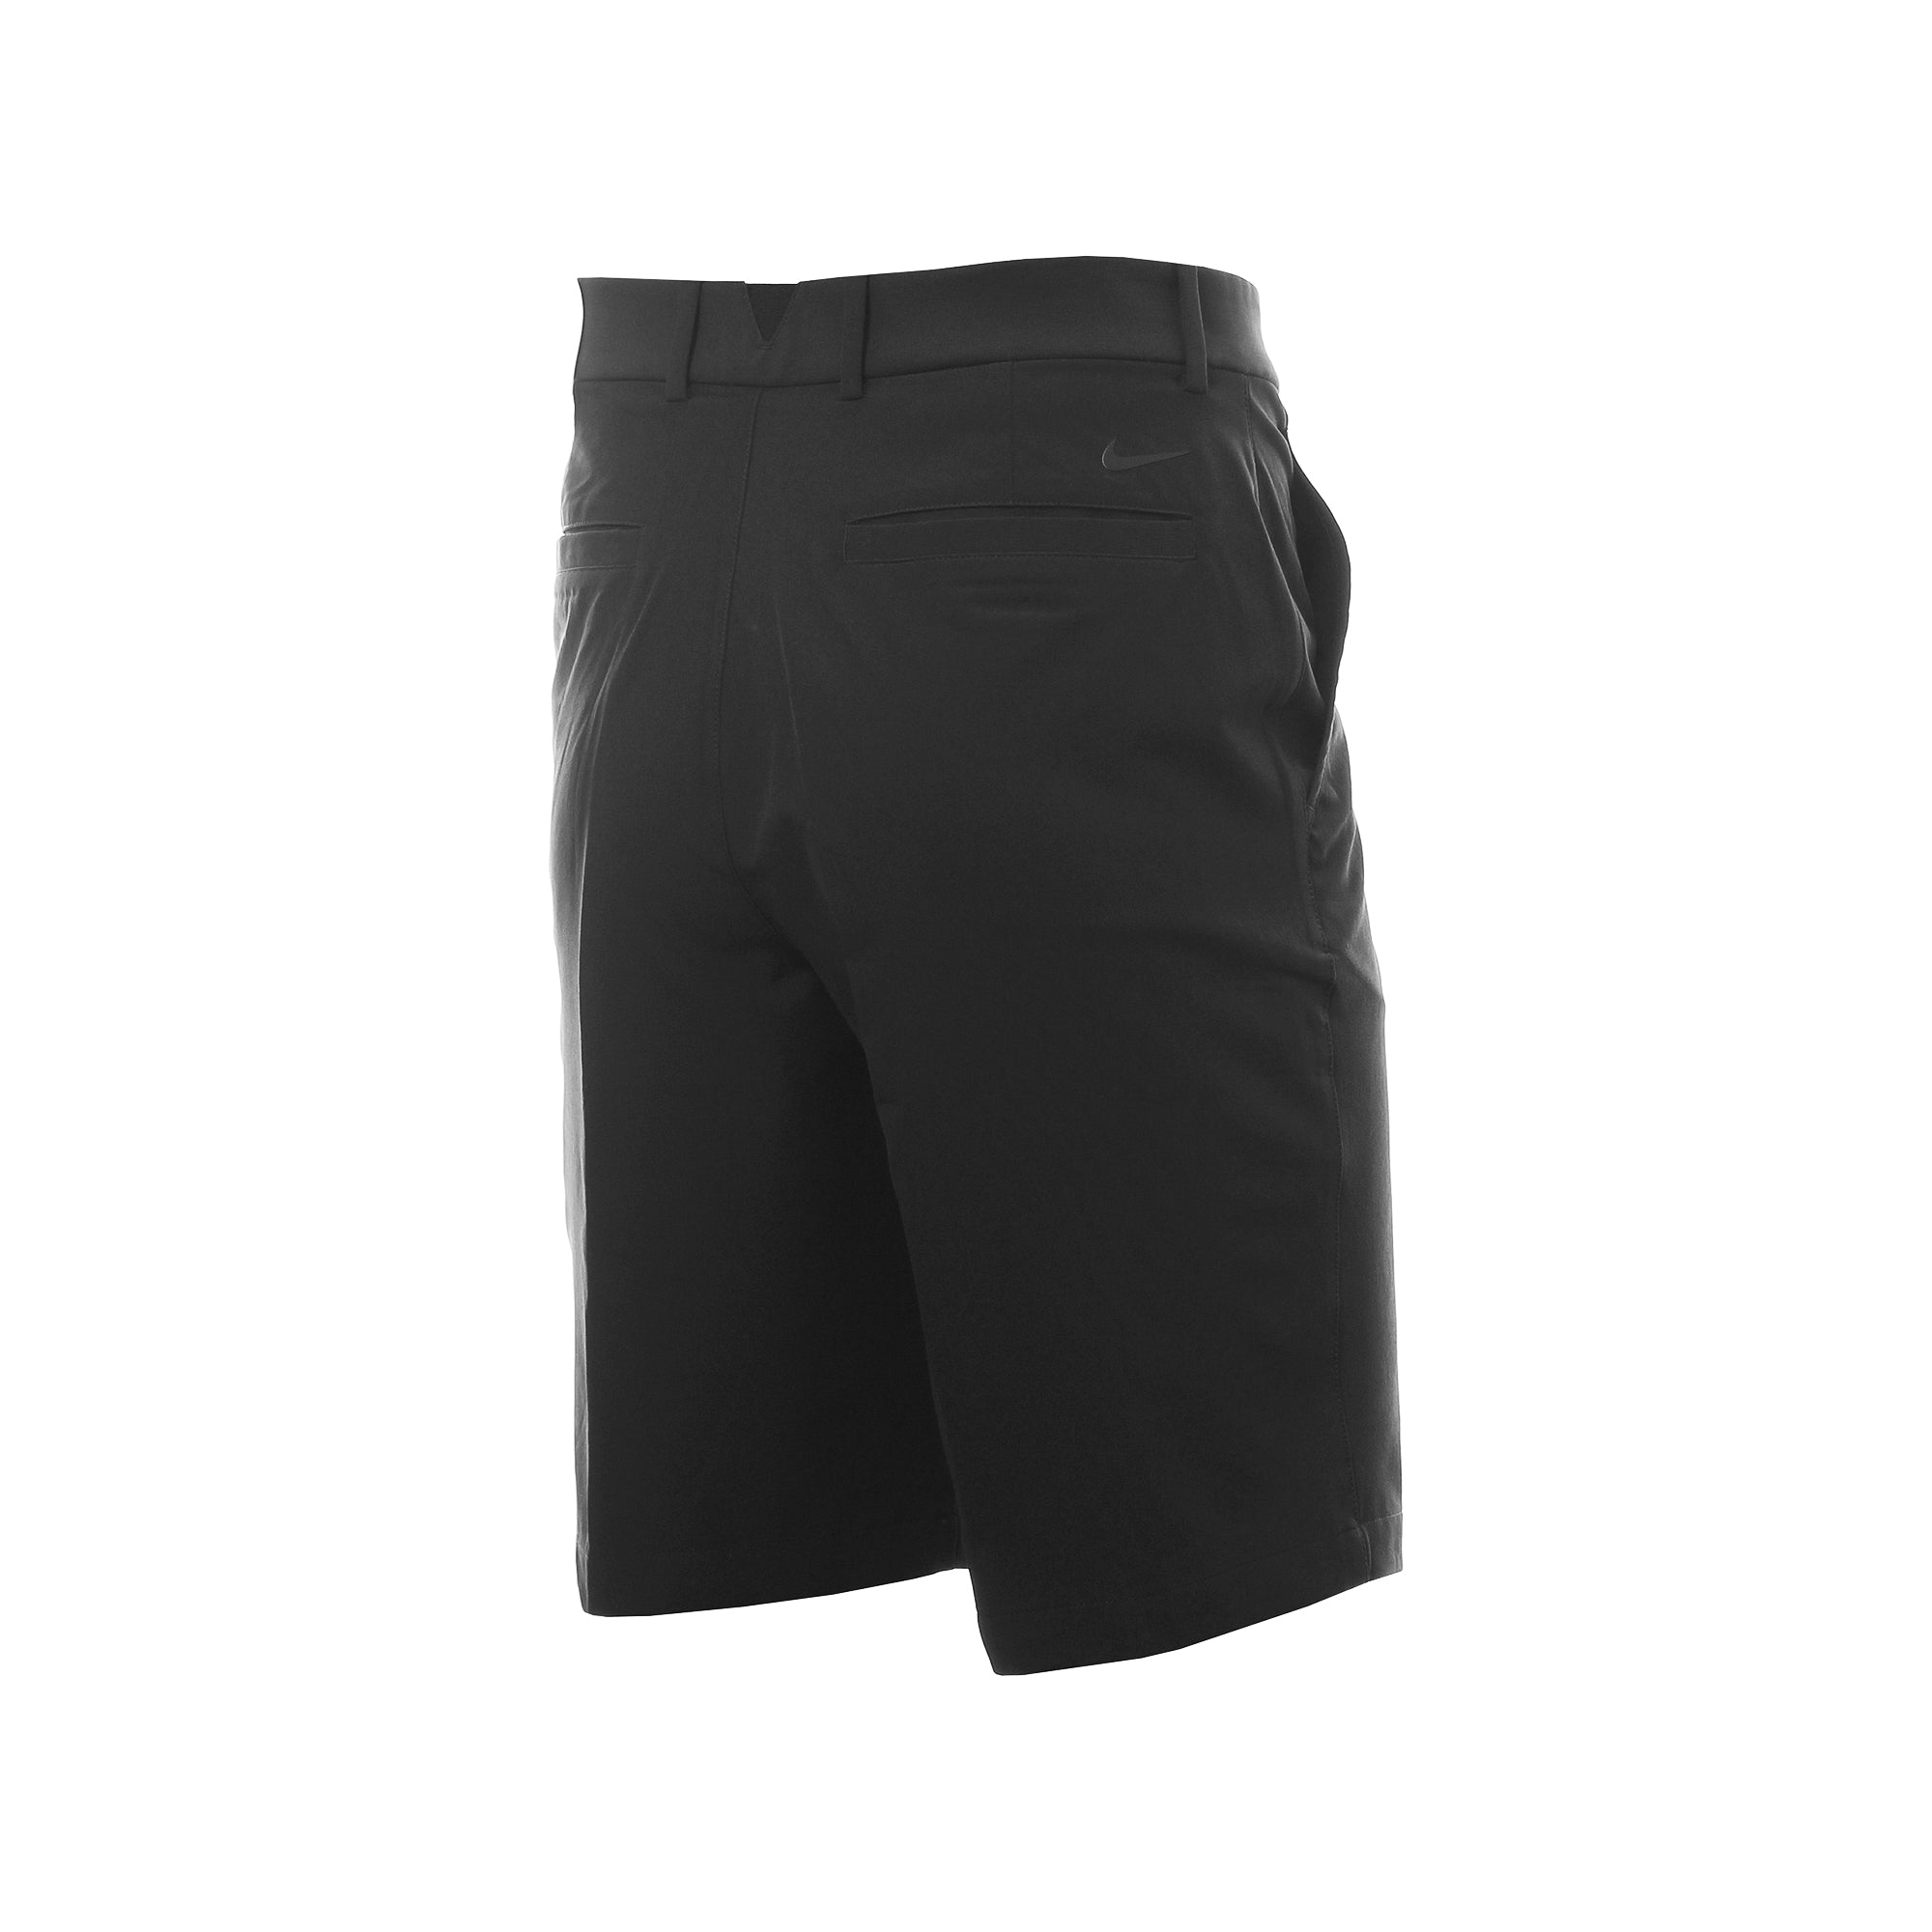 nike-golf-hybrid-shorts-black